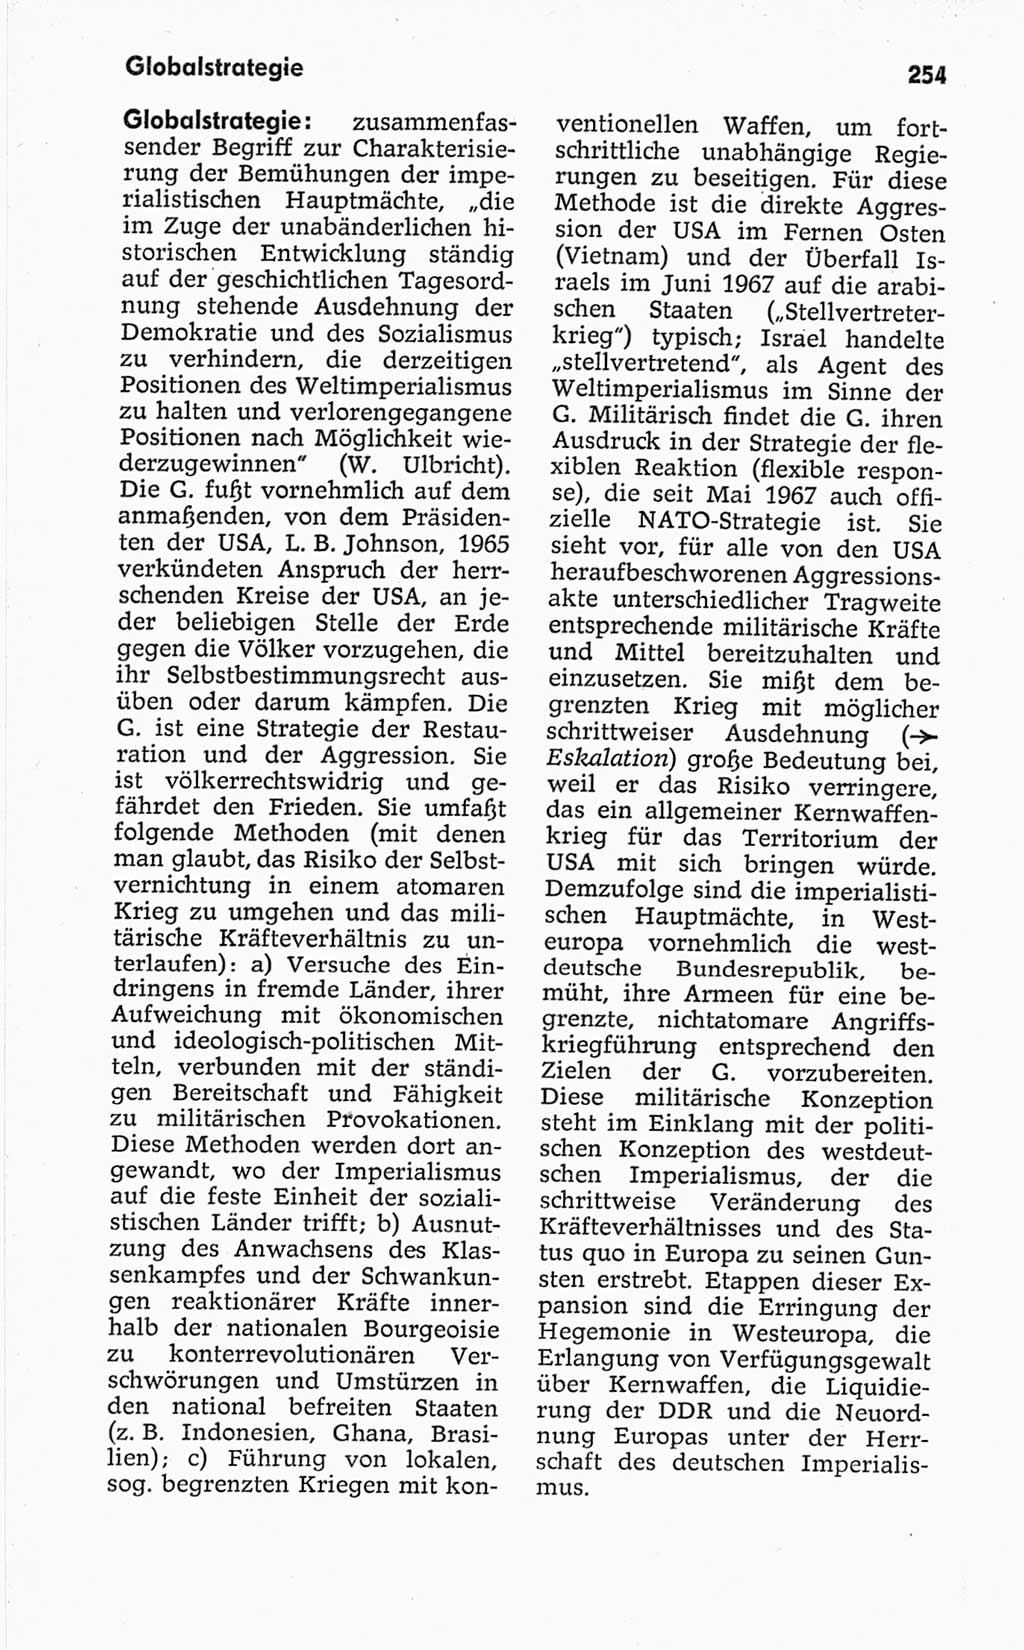 Kleines politisches Wörterbuch [Deutsche Demokratische Republik (DDR)] 1967, Seite 254 (Kl. pol. Wb. DDR 1967, S. 254)